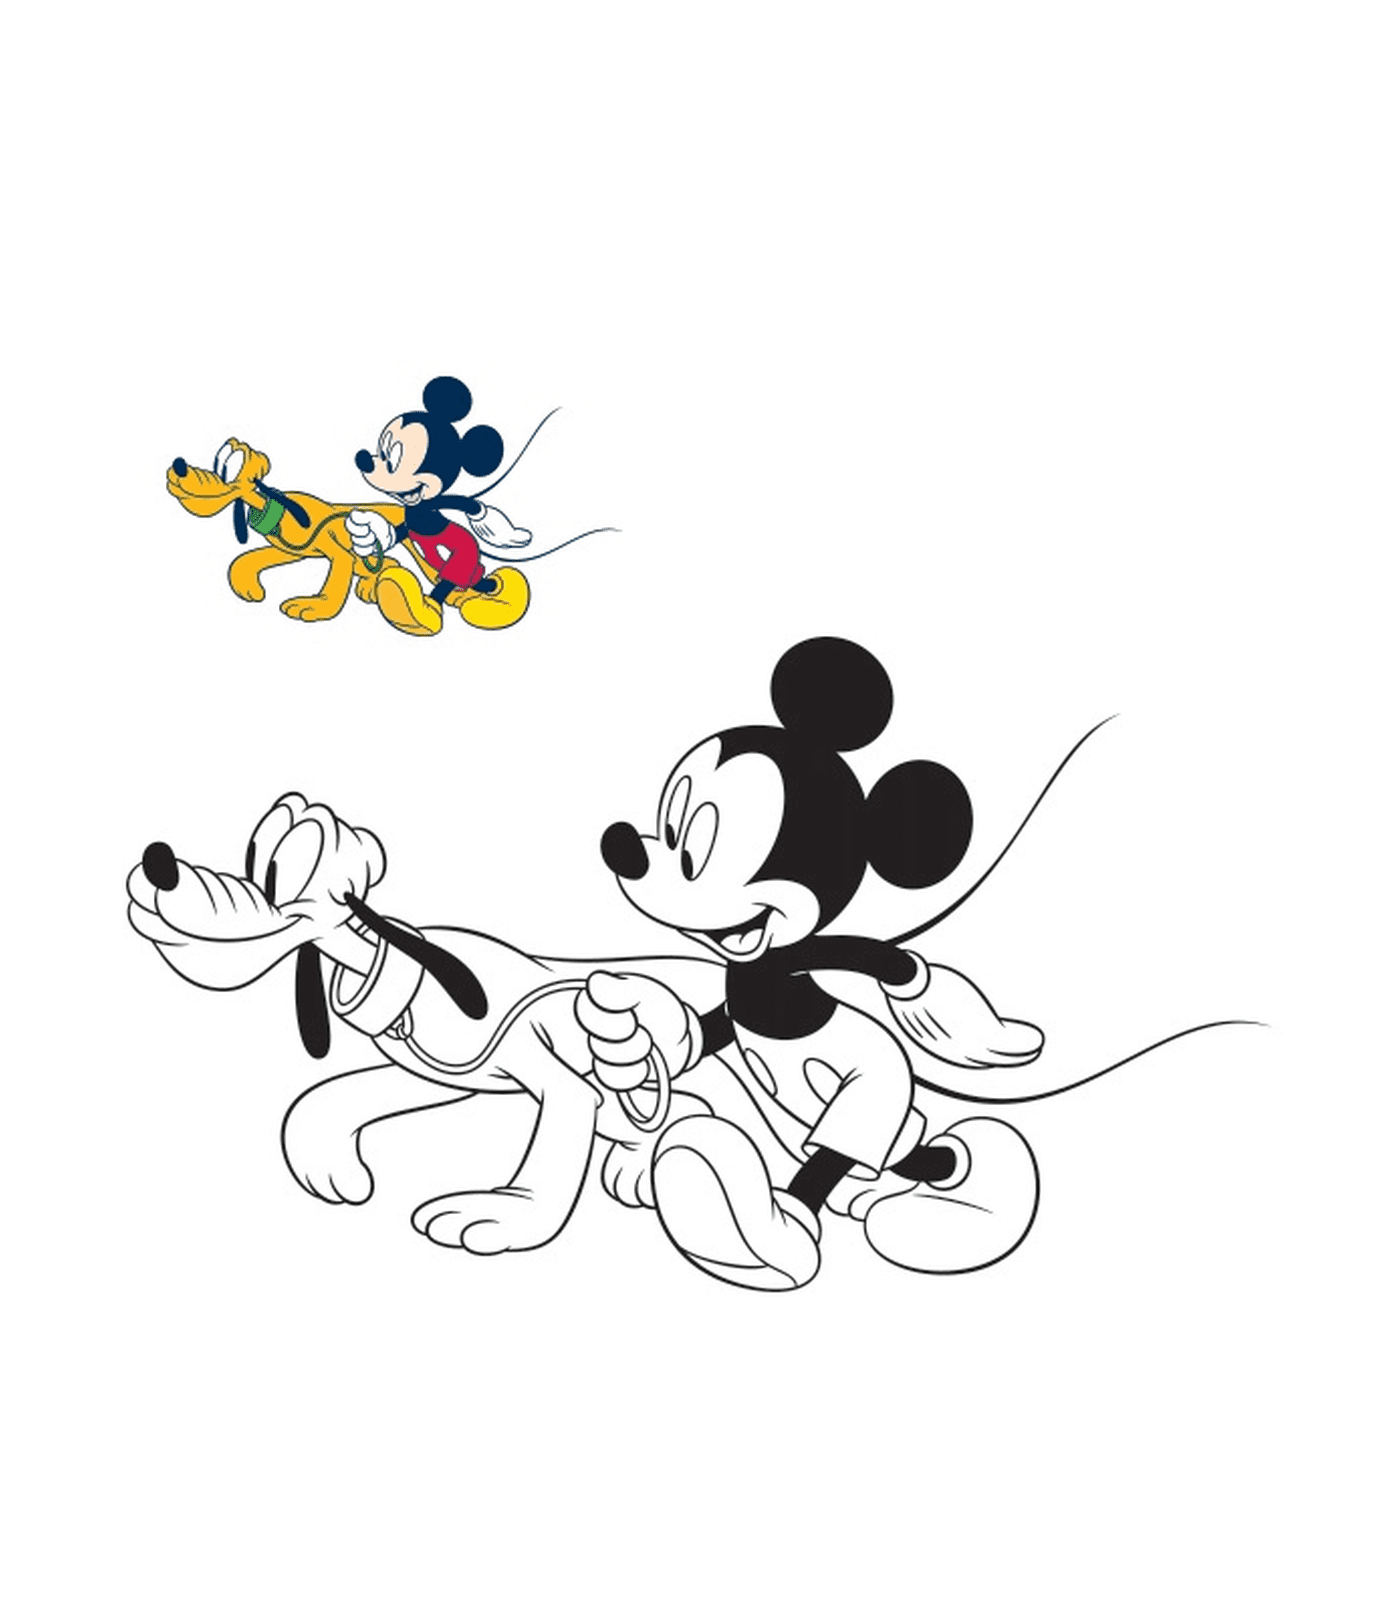  Mickey Mouse caminha com seu cão Pluto 